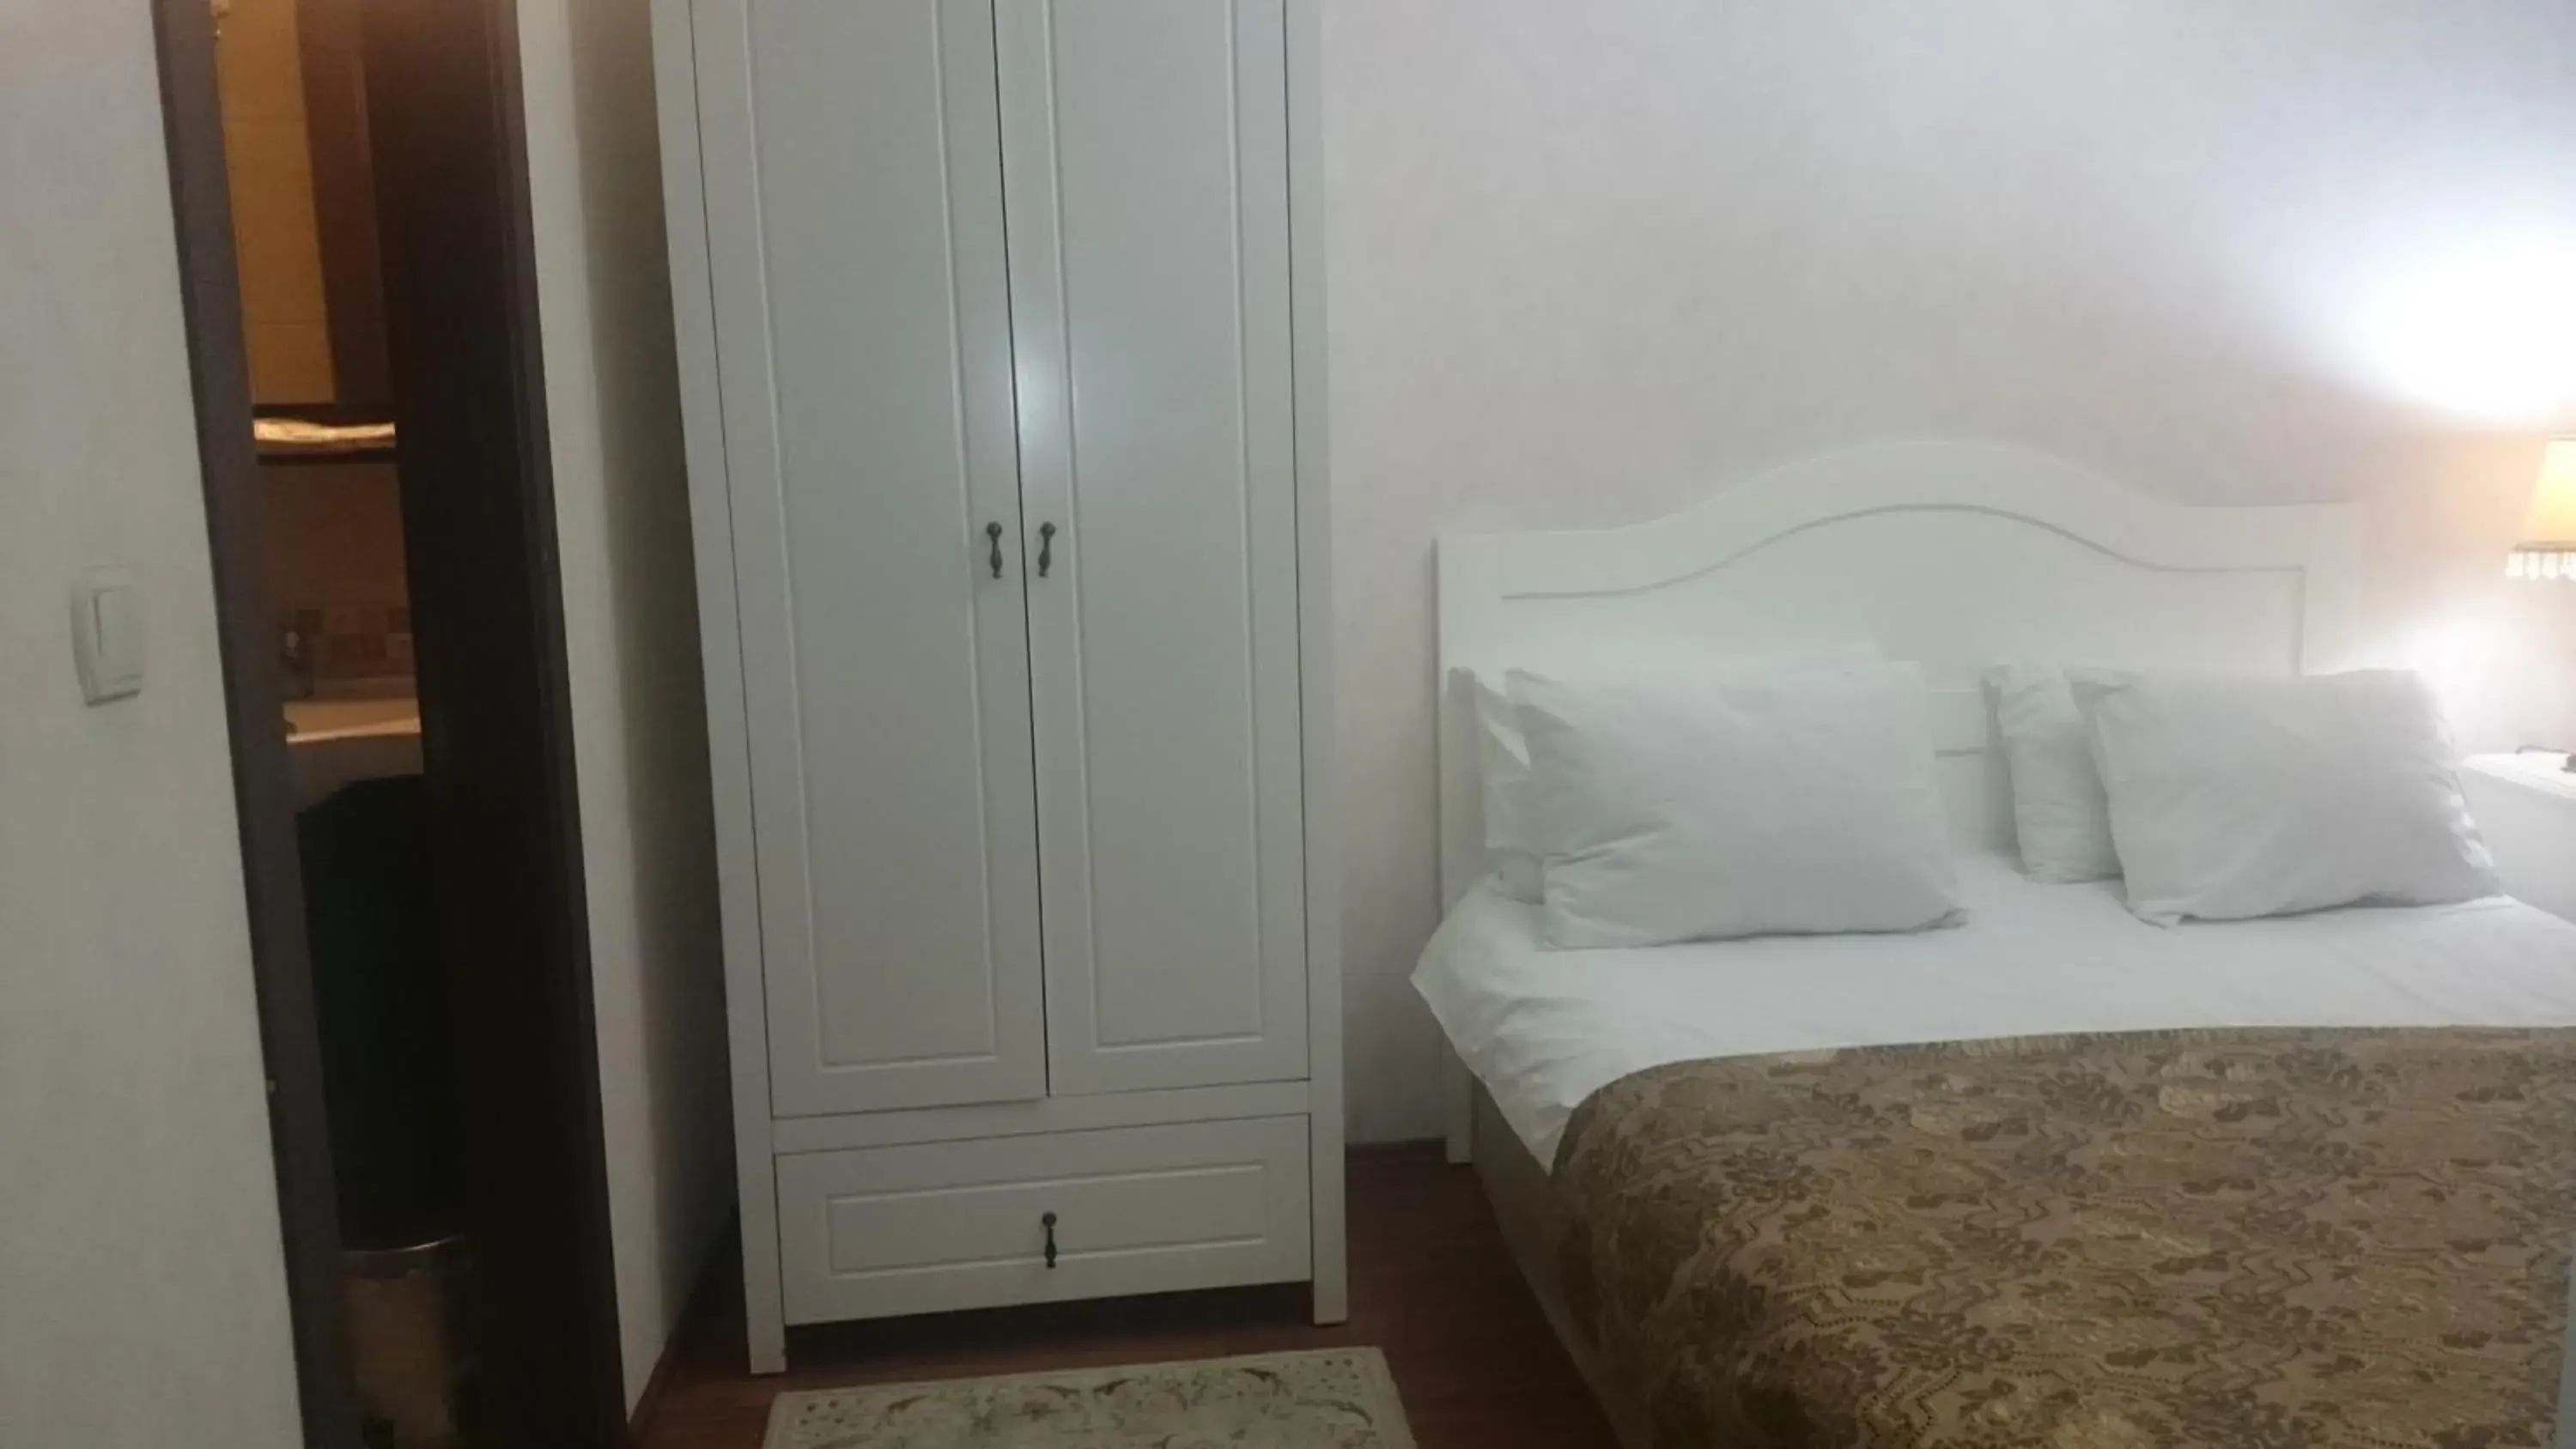 Bedroom, Bed in Asmali Hotel